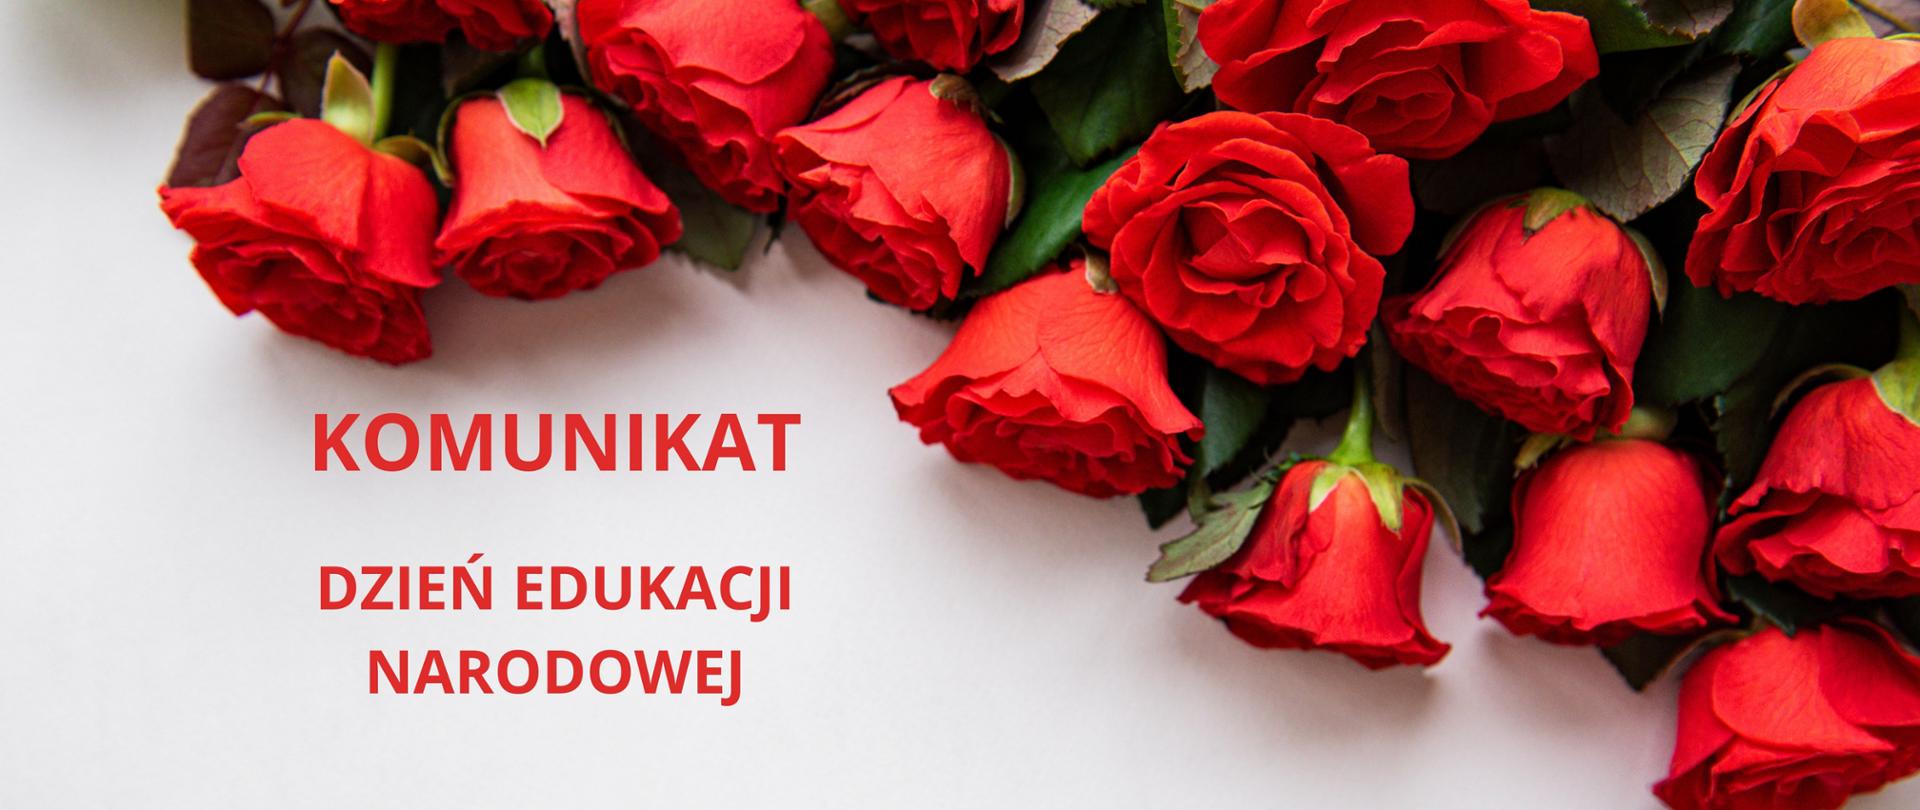 na białym tle u góry zdjęcia bukiet czerwonych róż poniżej napis komunikat dzień edukacji narodowej